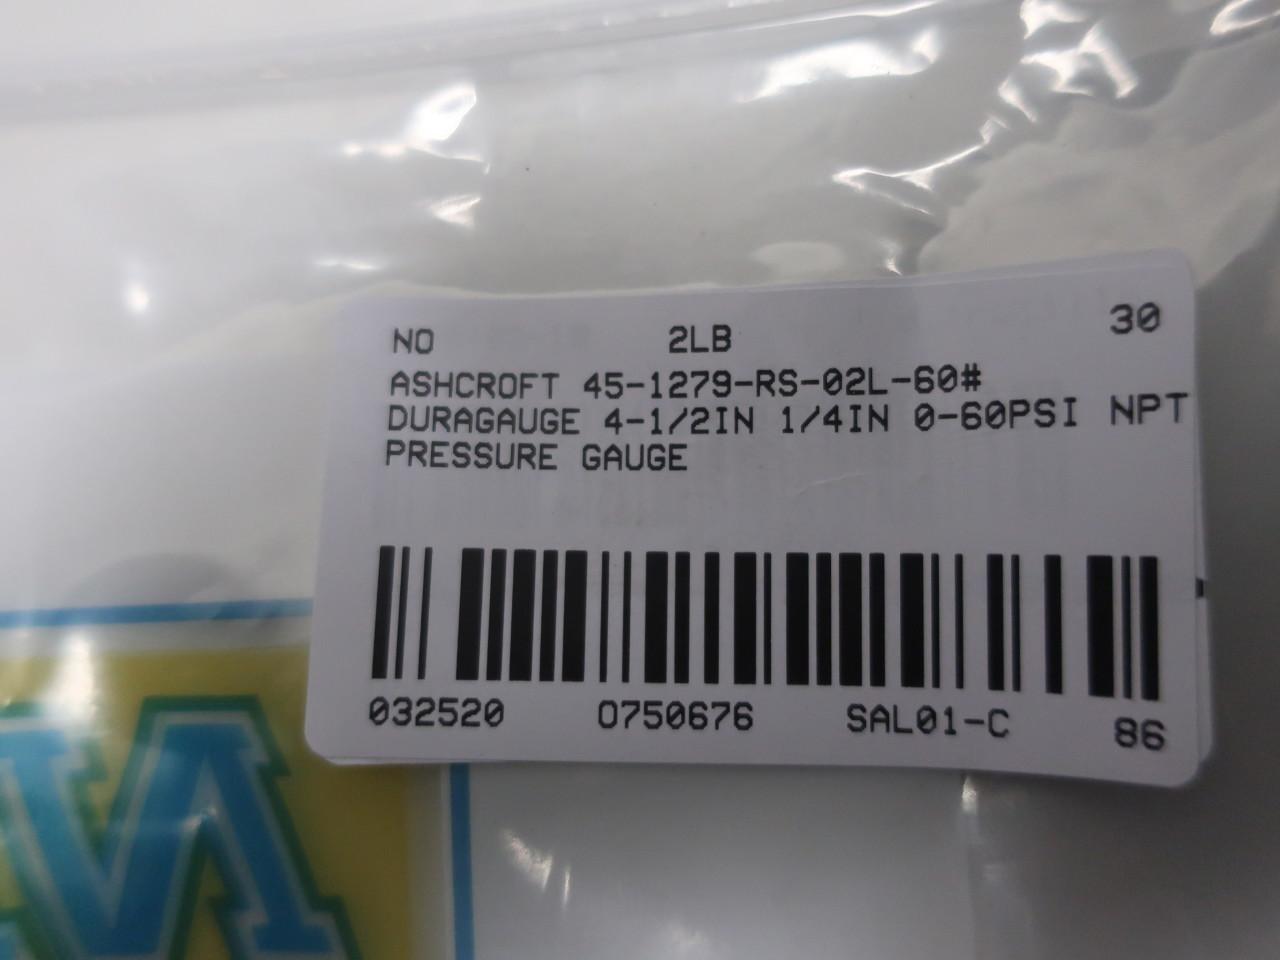 Ashcroft 45-1279-RS-02L-60# Duragauge 4-1/2in 0-60psi 1/4in Npt Pressure Gauge 